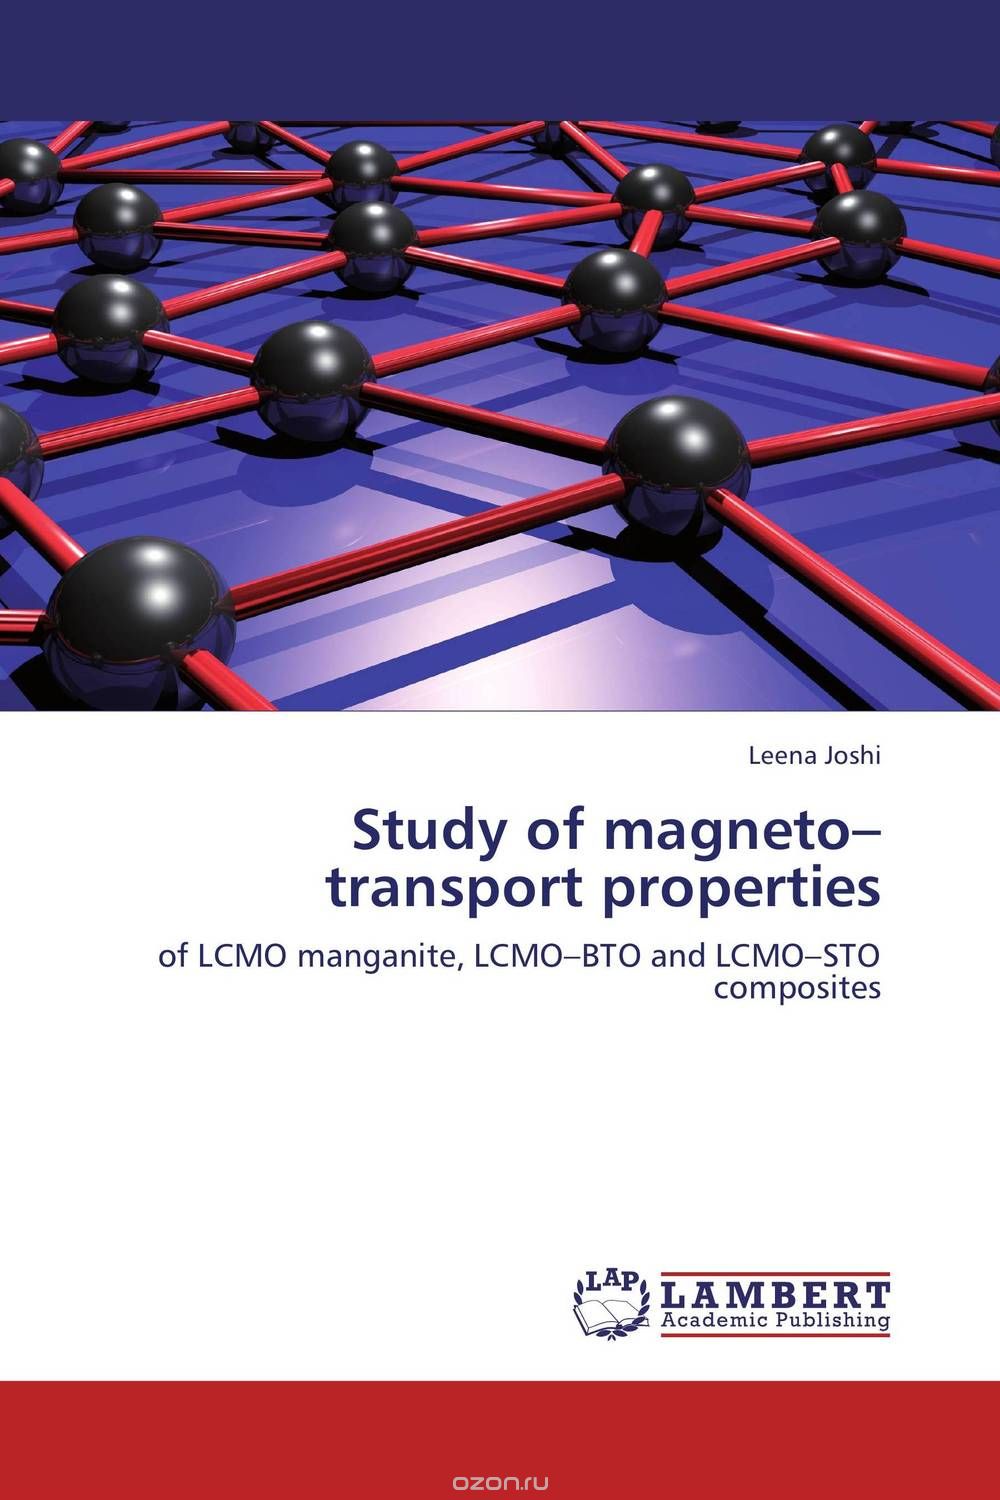 Скачать книгу "Study of magneto–transport properties"